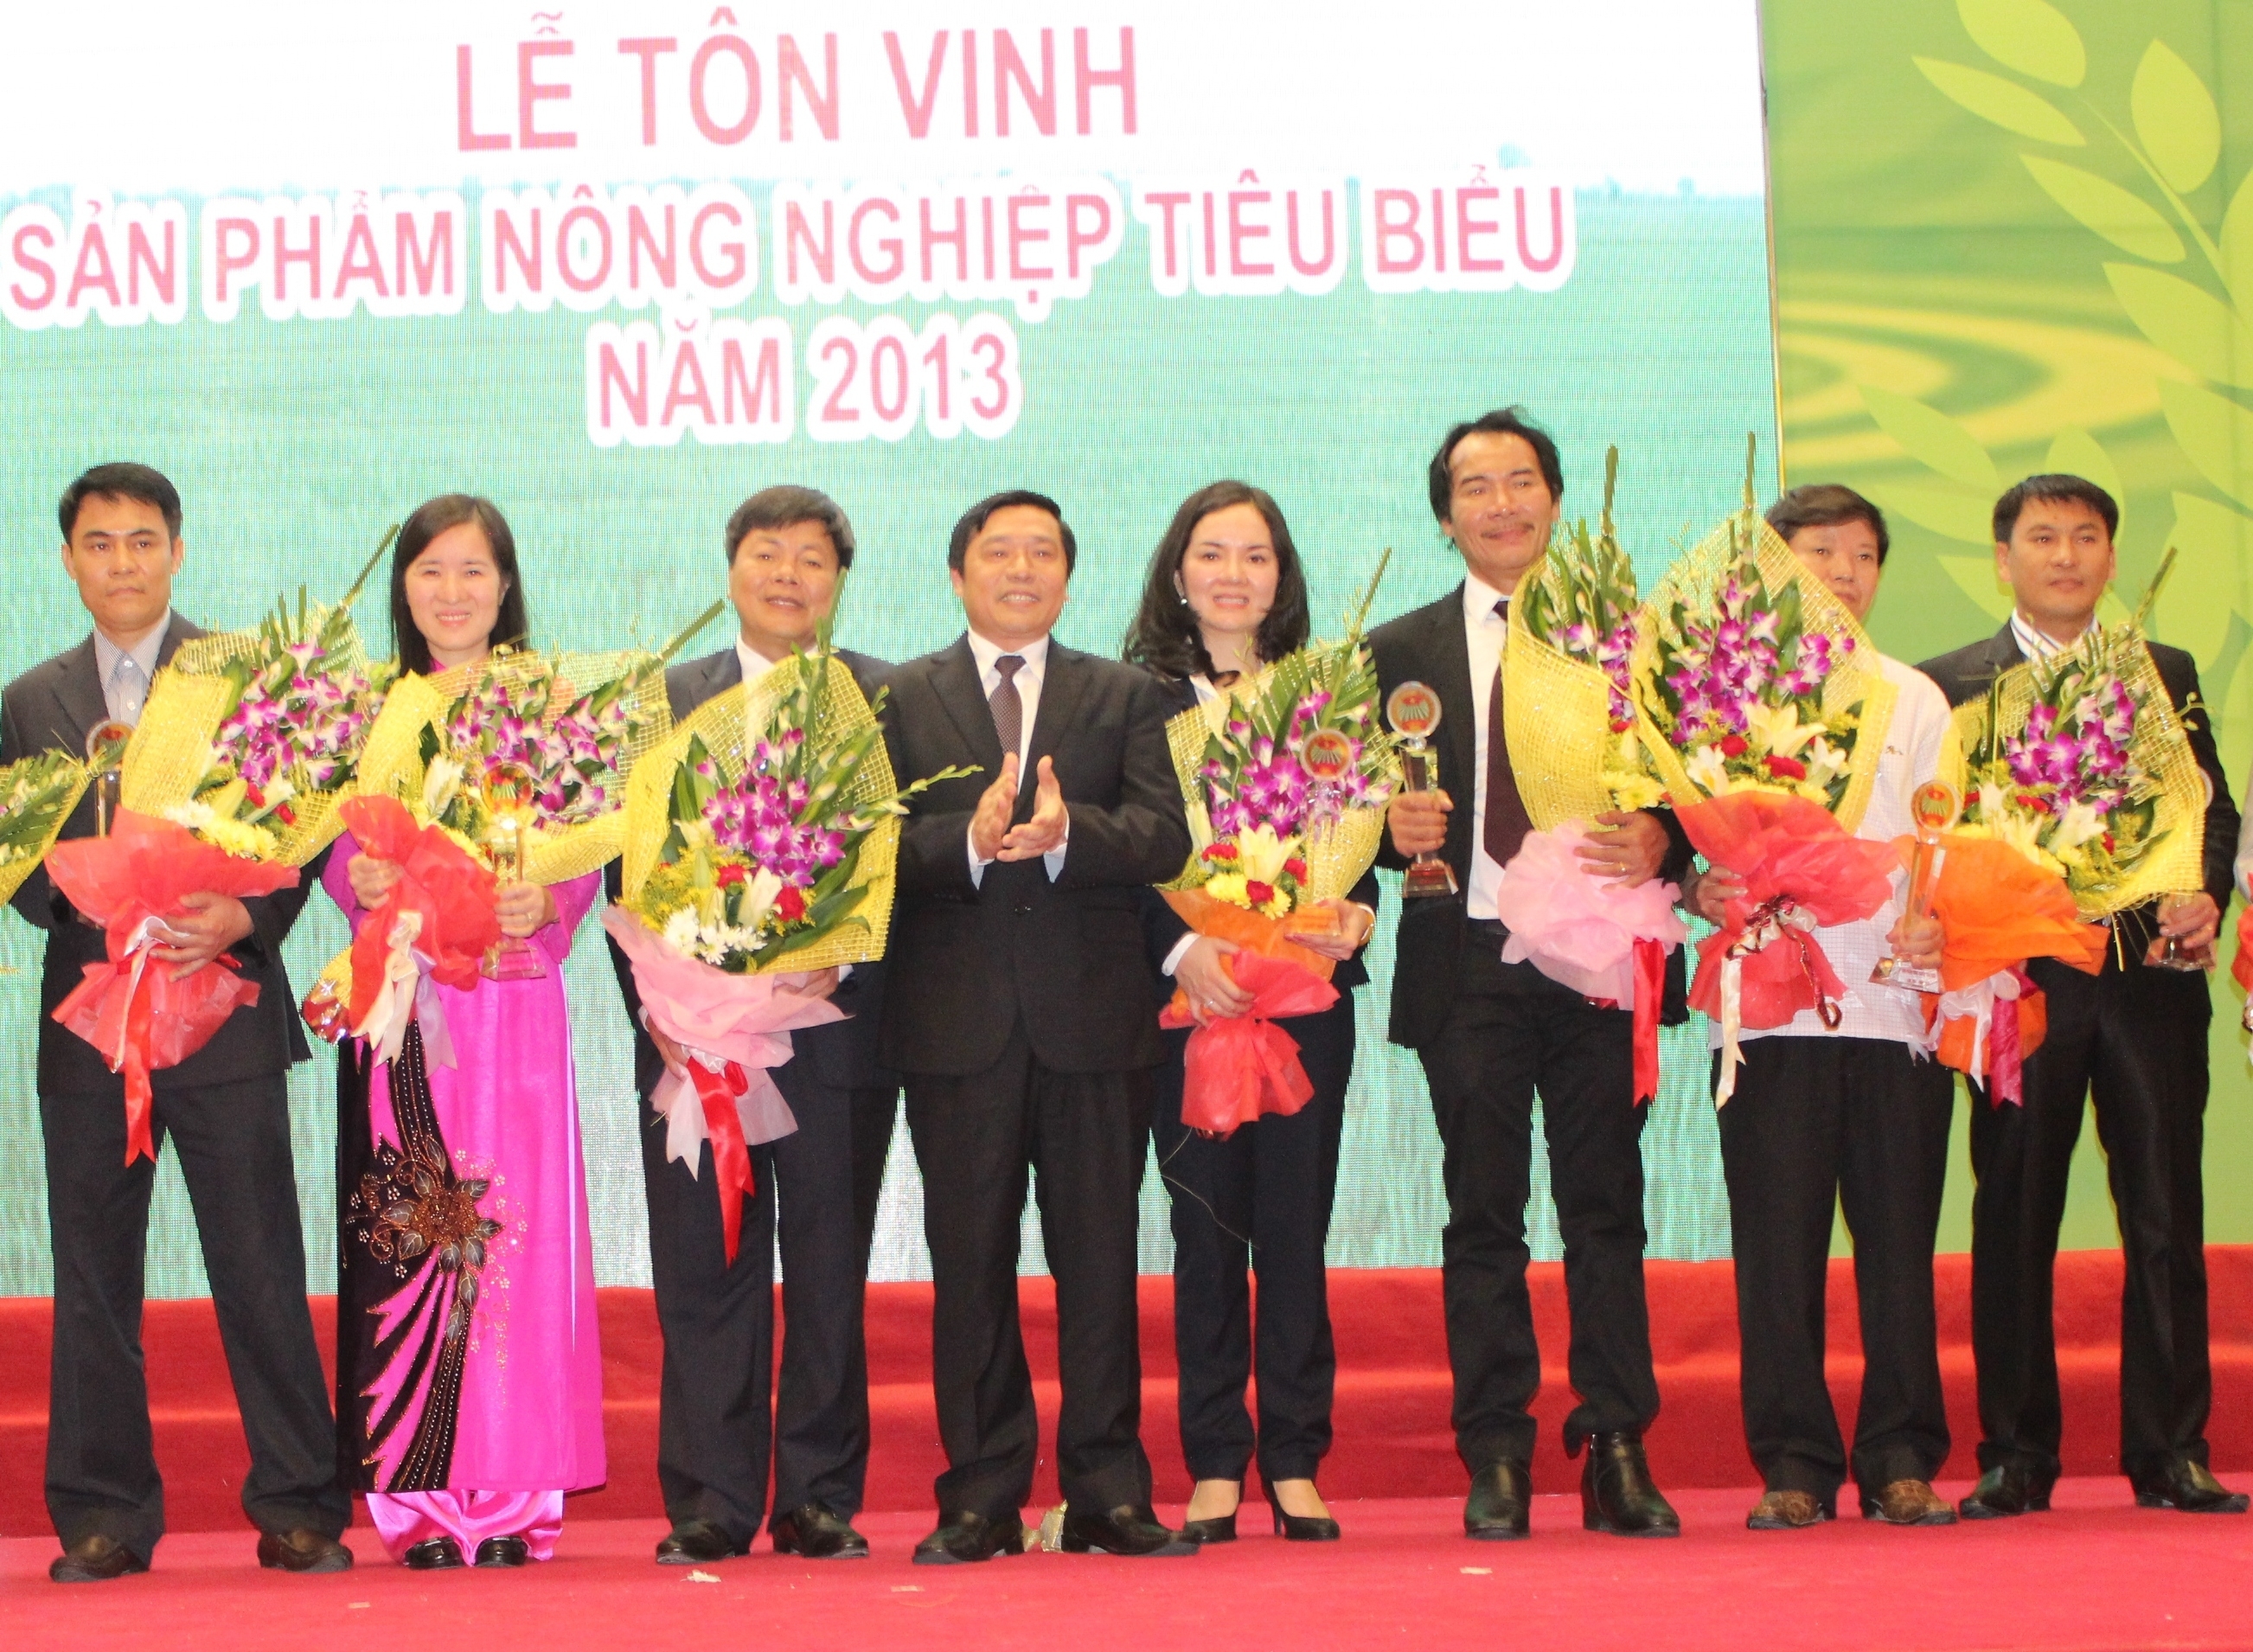 PVFCCo nhận danh hiệu "Sản phẩm nông nghiệp tiêu biểu năm 2013"